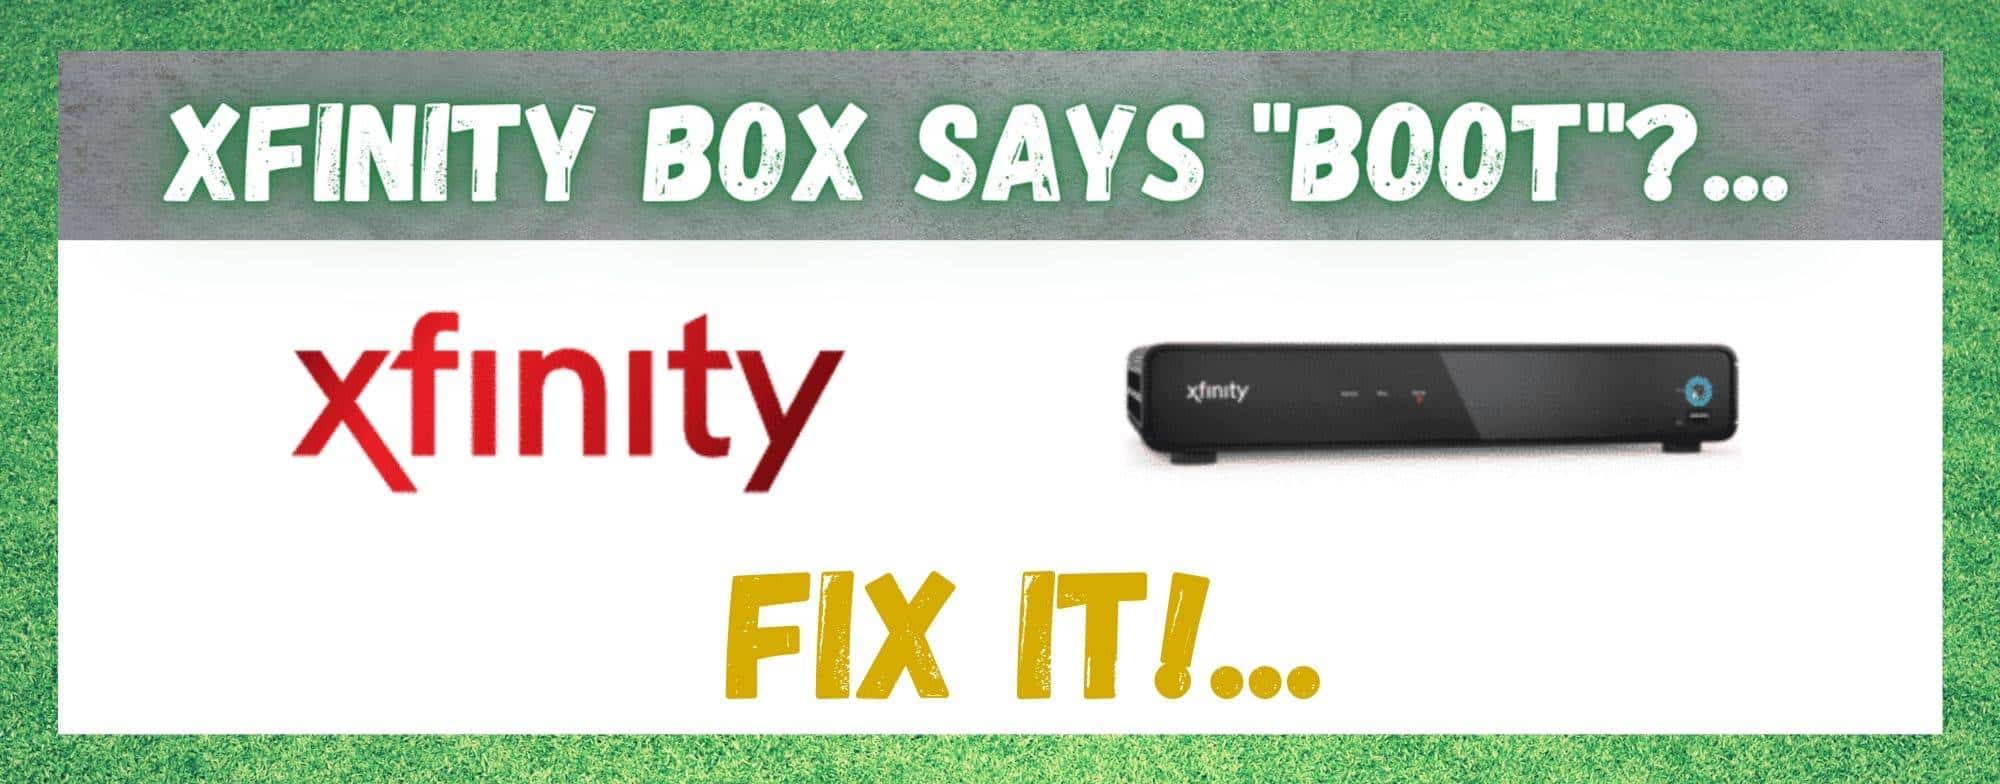 Xfinity Box म्हणतो बूट: निराकरण करण्याचे 4 मार्ग